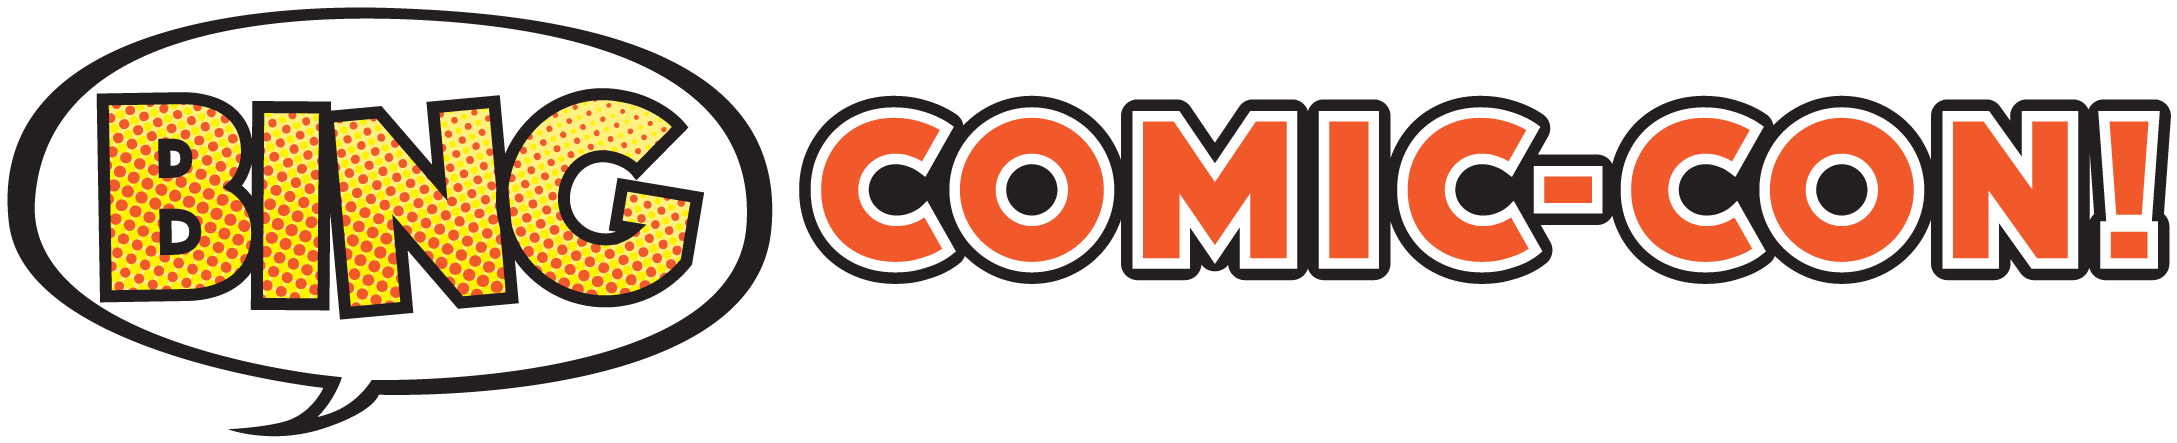 Bing Comic-con - Comics (2200x459)